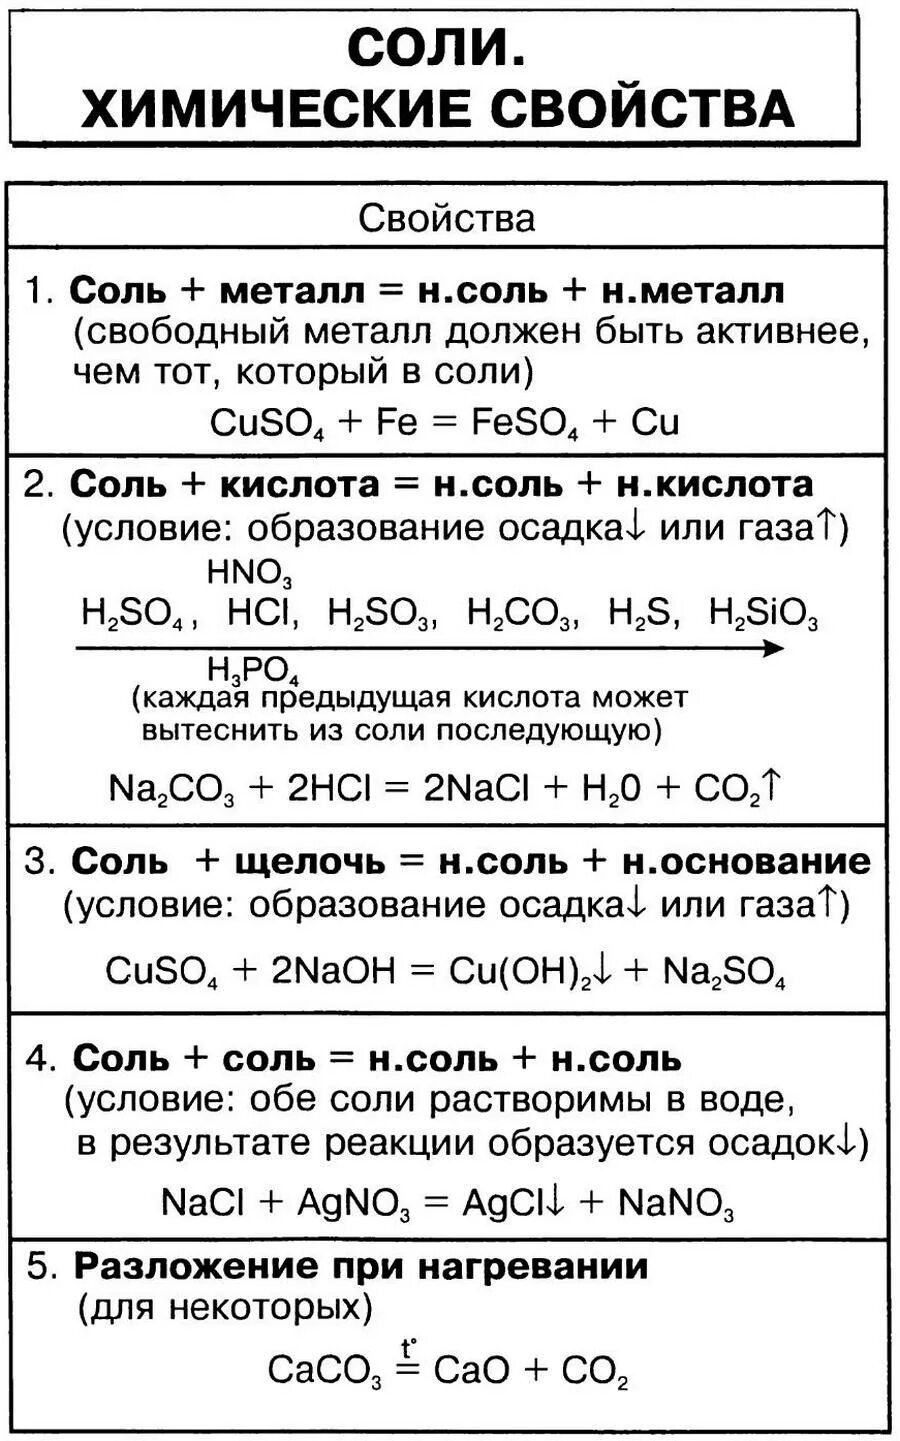 Химические свойства кислот и солей 8 класс. Химические свойства солей 8 класс химия таблица. Свойства солей химия 8 класс. Соли химические свойства 8 класс таблица. Химические свойства солей 8 класс.